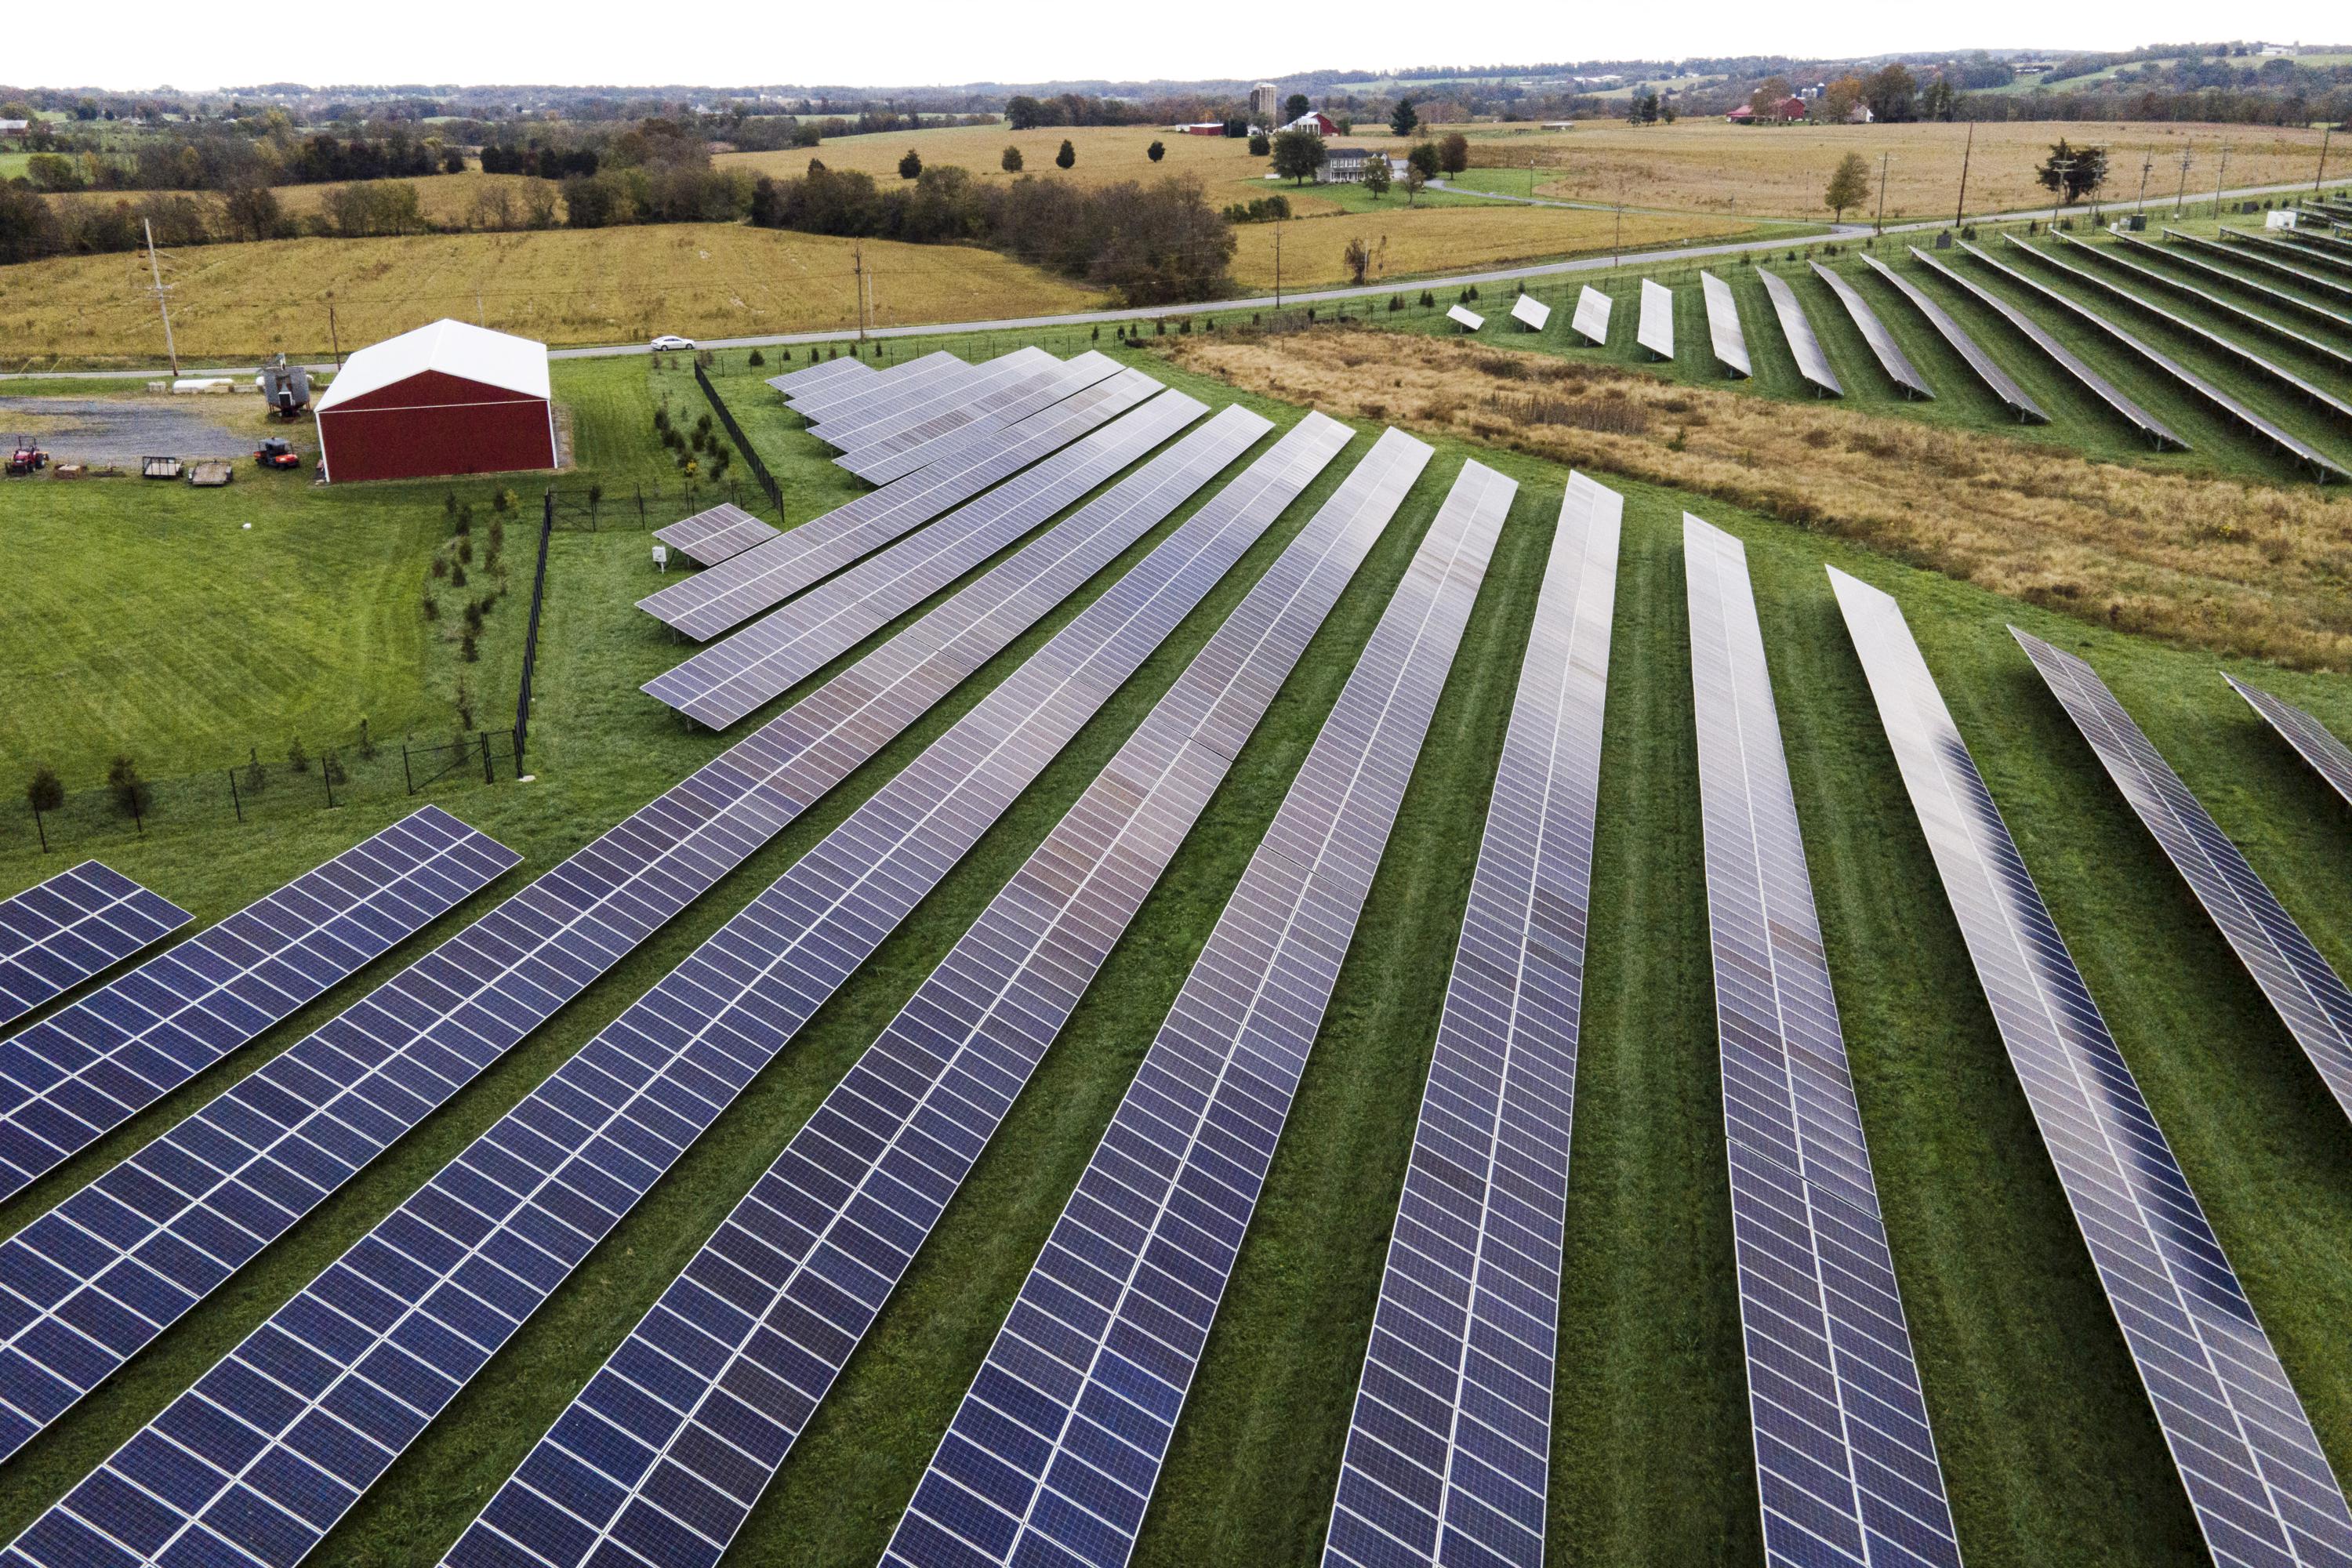 Biden ordnet Sofortmaßnahmen an, um die US-Solarproduktion zu steigern